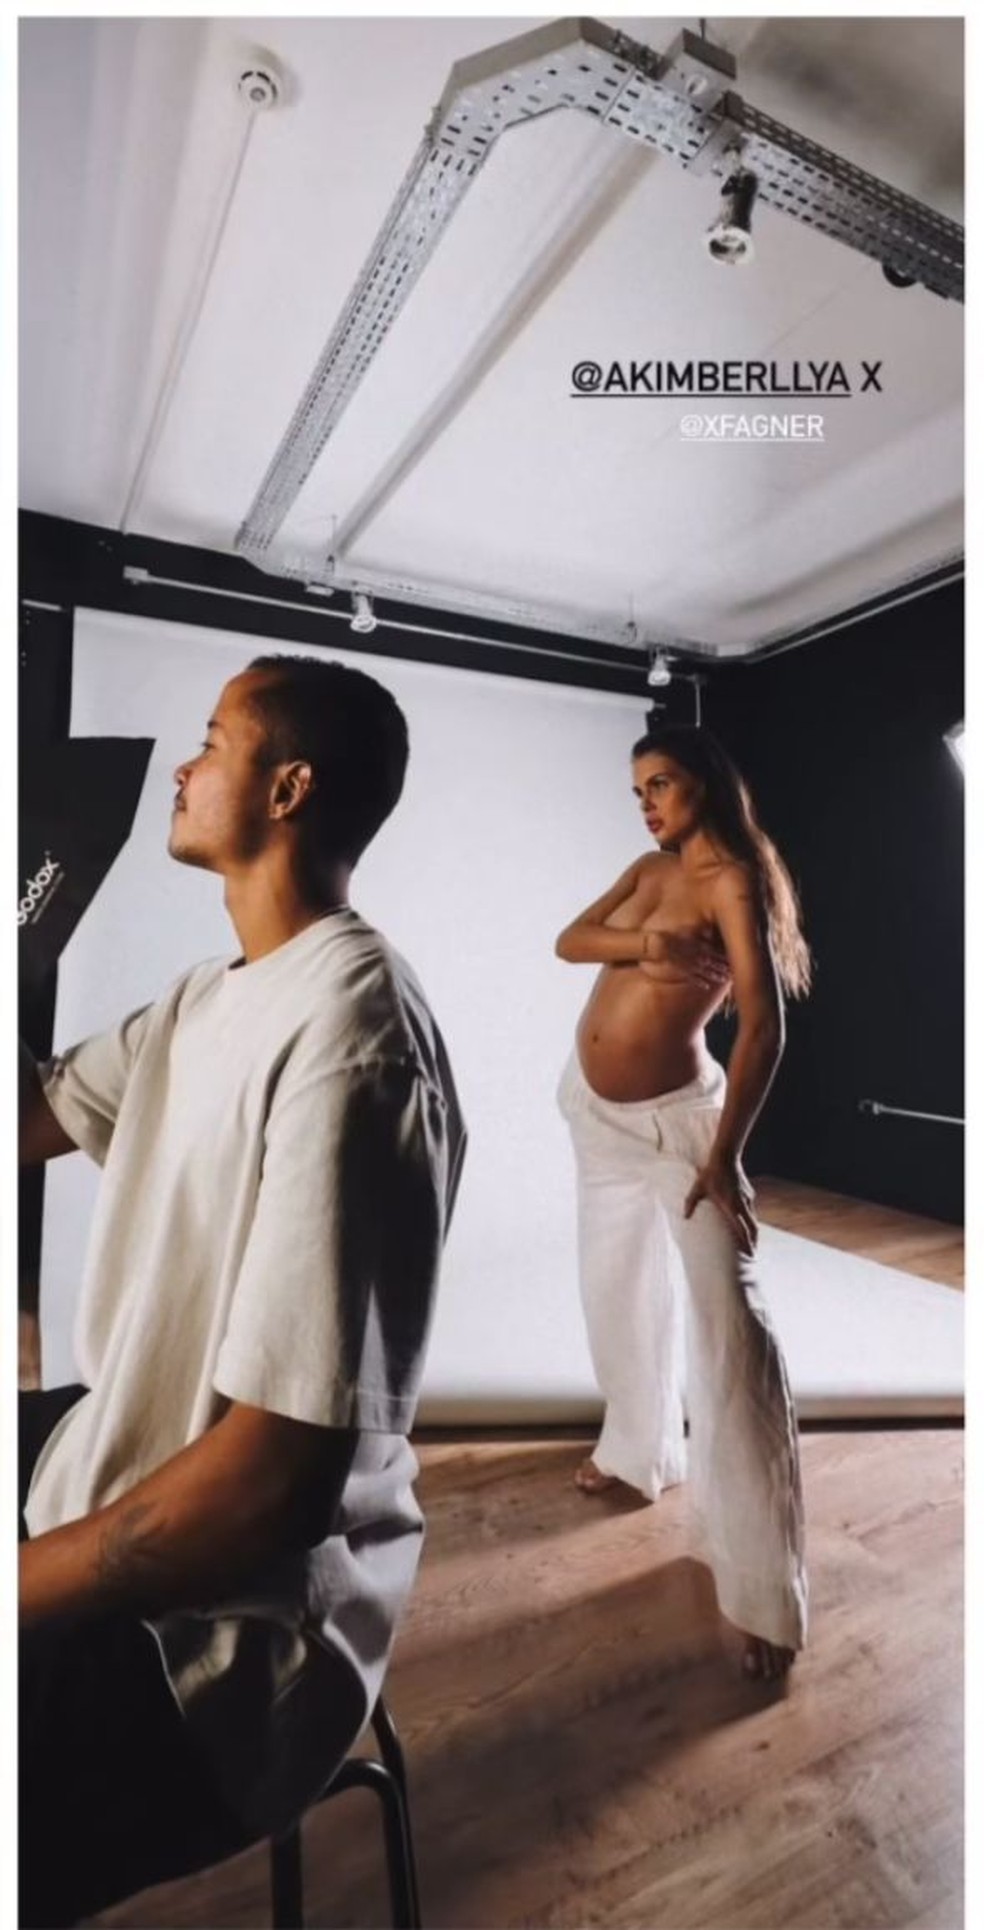 Amanda Kimberlly, modelo que estria grávida de Neymar — Foto: Reprodução/Instagram